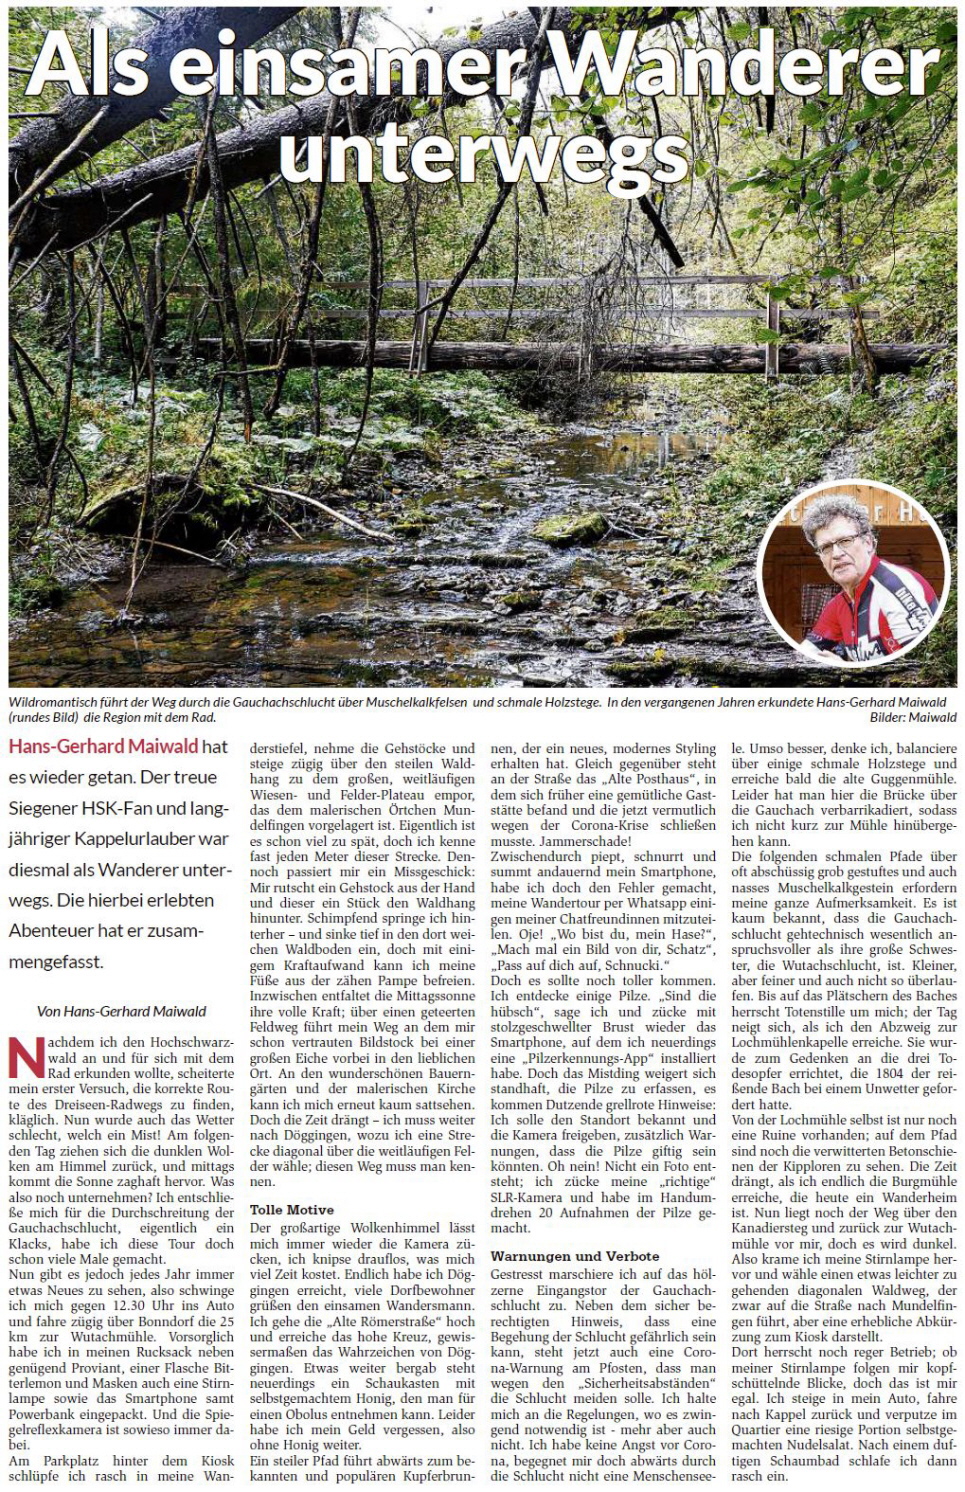 Eine Wanderung durch die Gauchachschucht im Herbst 2020 mit abenteuerlichen Vorkommnissen - erschienen am 28. September 2020 im Hochschwarzwaldkurier"